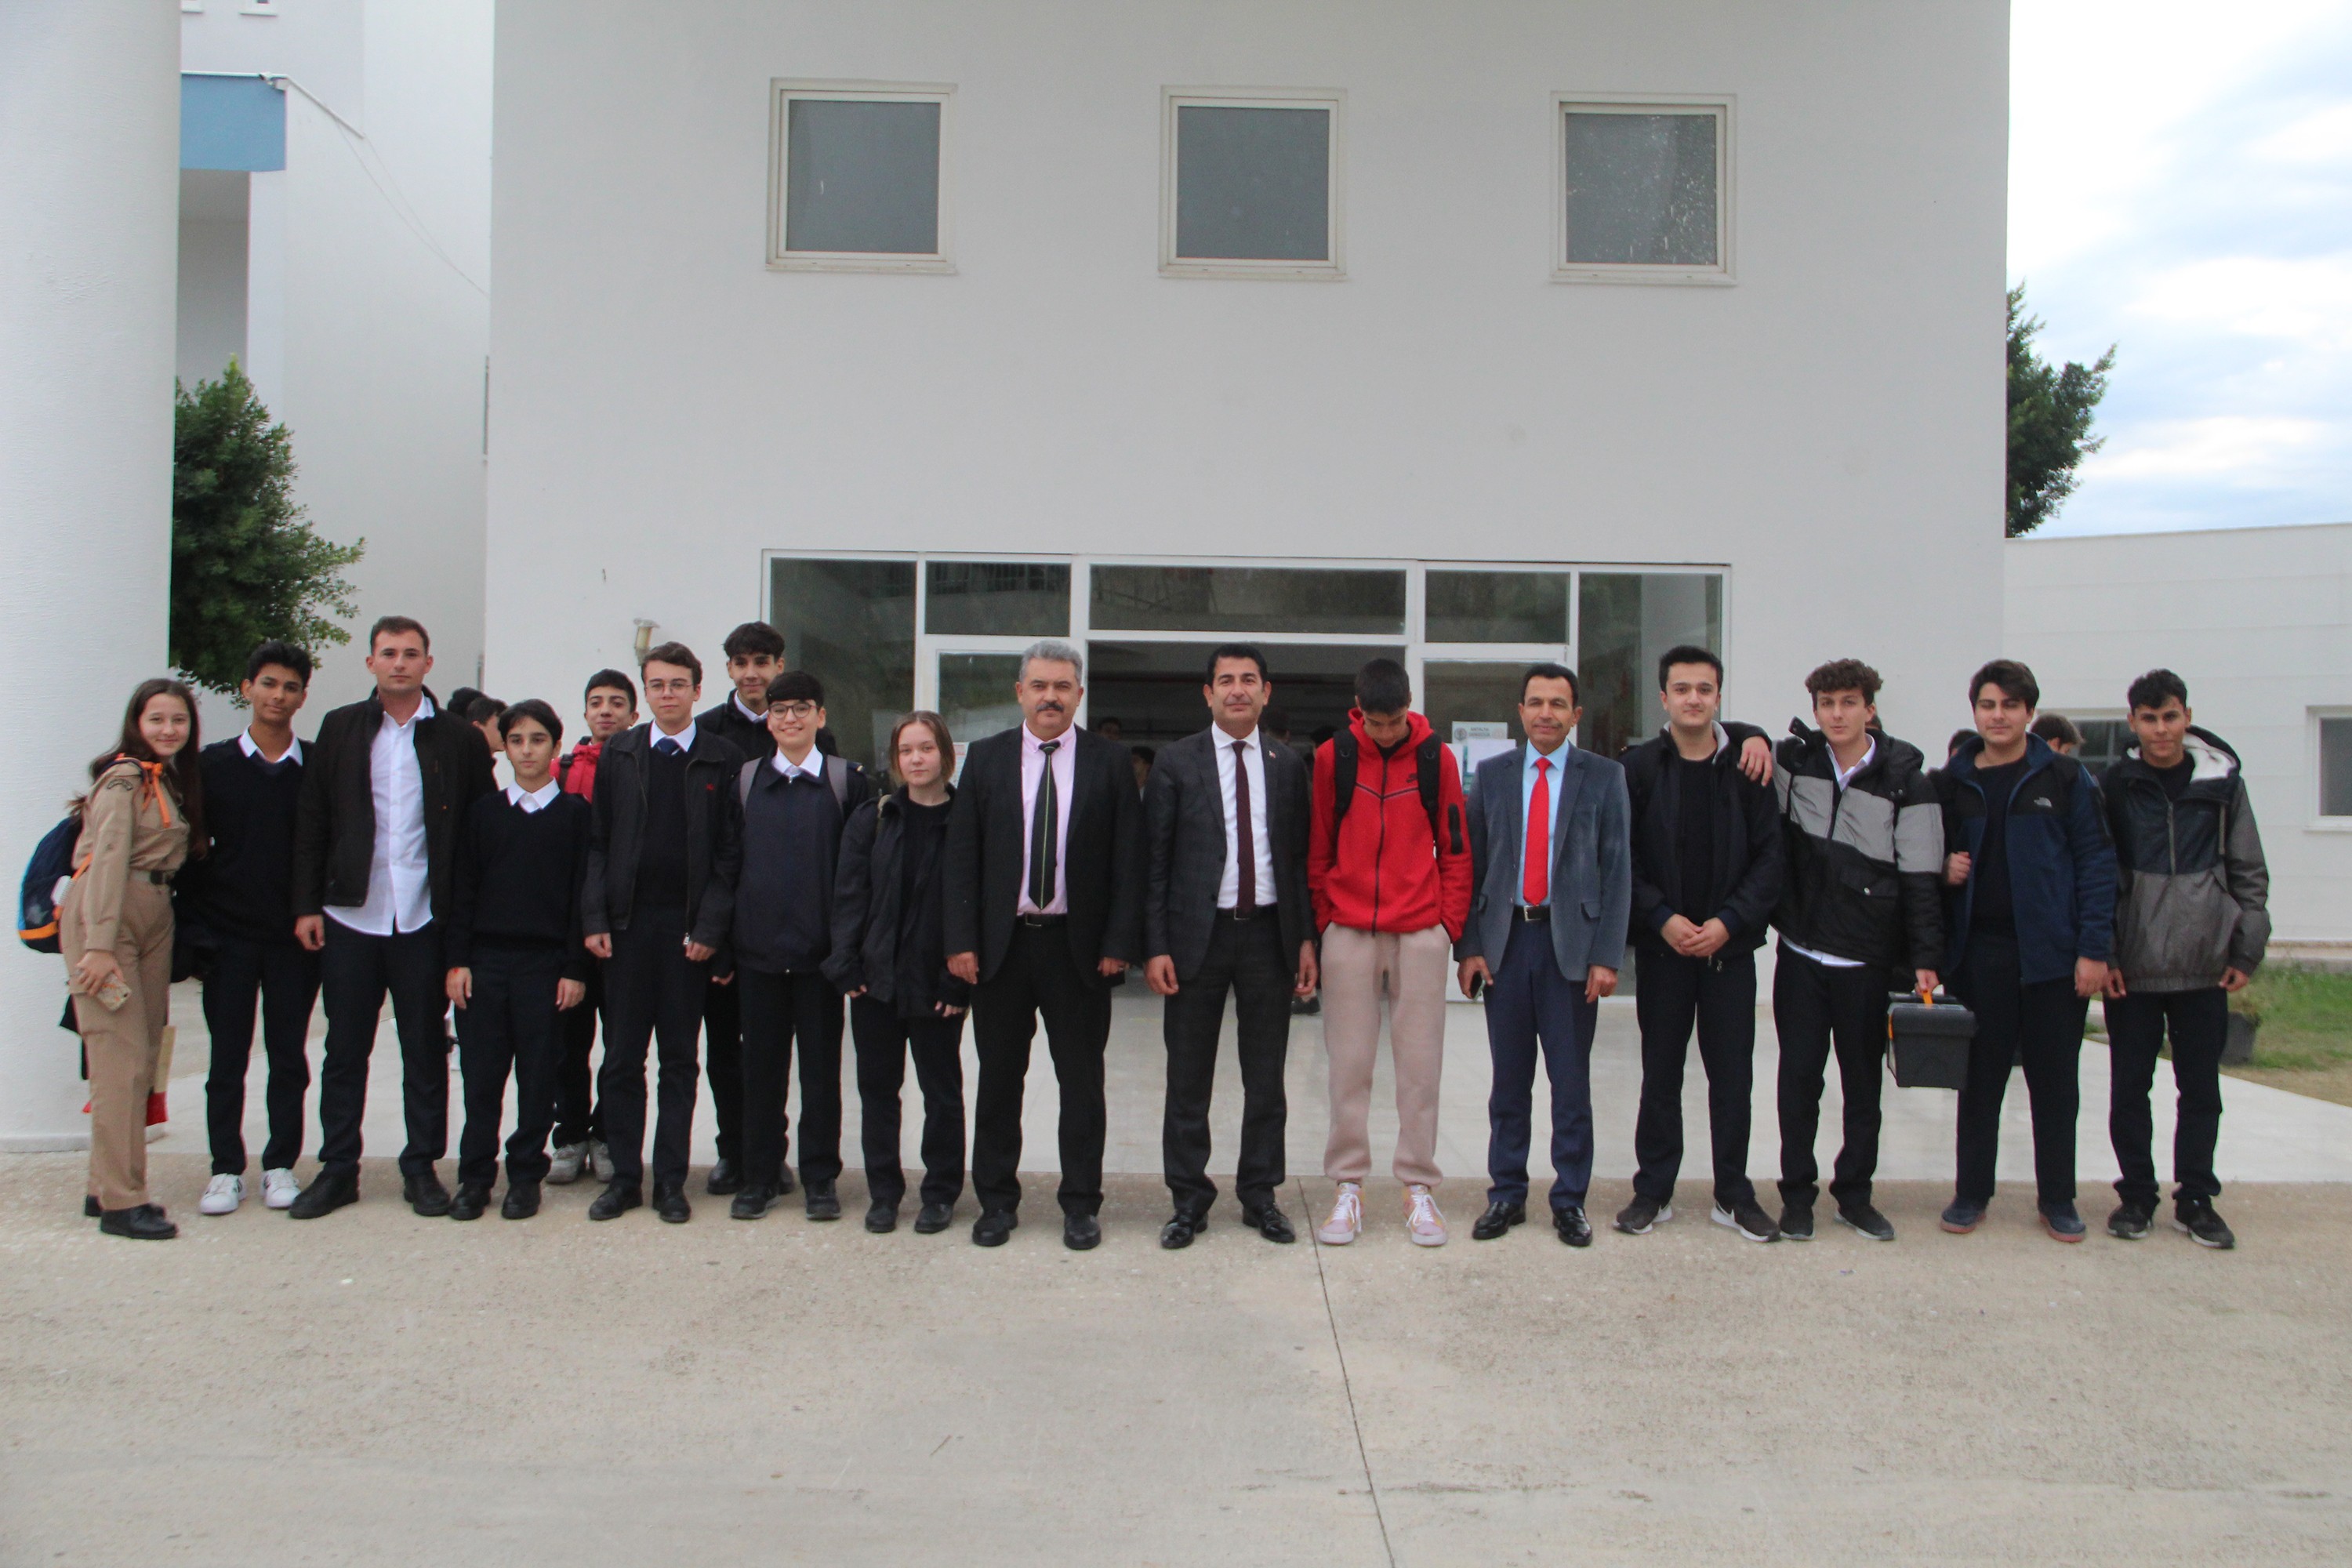 Denizcilik ve gemi yapımı alanlarında eğitim veren, sektöre nitelikli eleman yetiştiren Türkiye’nin önde gelen okullarından Fettah Tamince Mesleki ve Teknik (Denizcilik) Anadolu Lisesi, geleceğin denizcilerini yetiştiriyor. Erkek öğrencilerle birlikte 98 kız öğrencinin eğitim gördüğü okulda mezun olan öğrenciler, hem özel sektör hem de kamuda kolaylıkla istihdam edilmeleriyle öne çıkıyor. Kız öğrencilerin hedefi ise uzak yol kaptanlığı. 